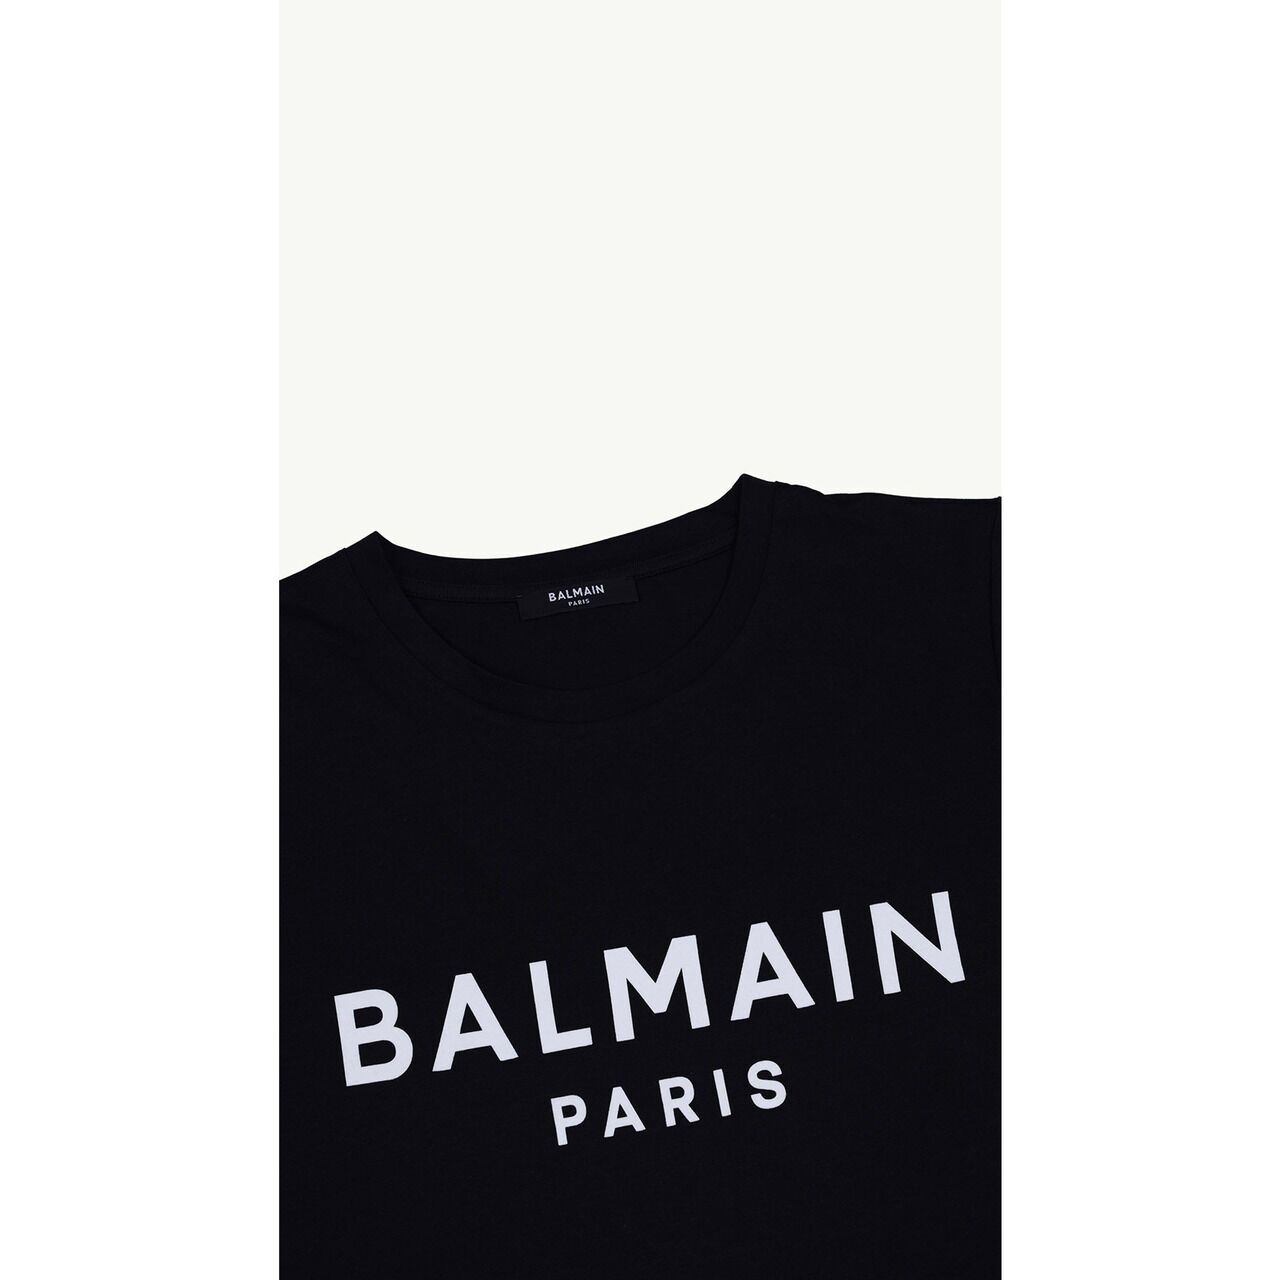 Balmain Women Balmain Paris Flocked Suede Logo T-Shirt in Black/White